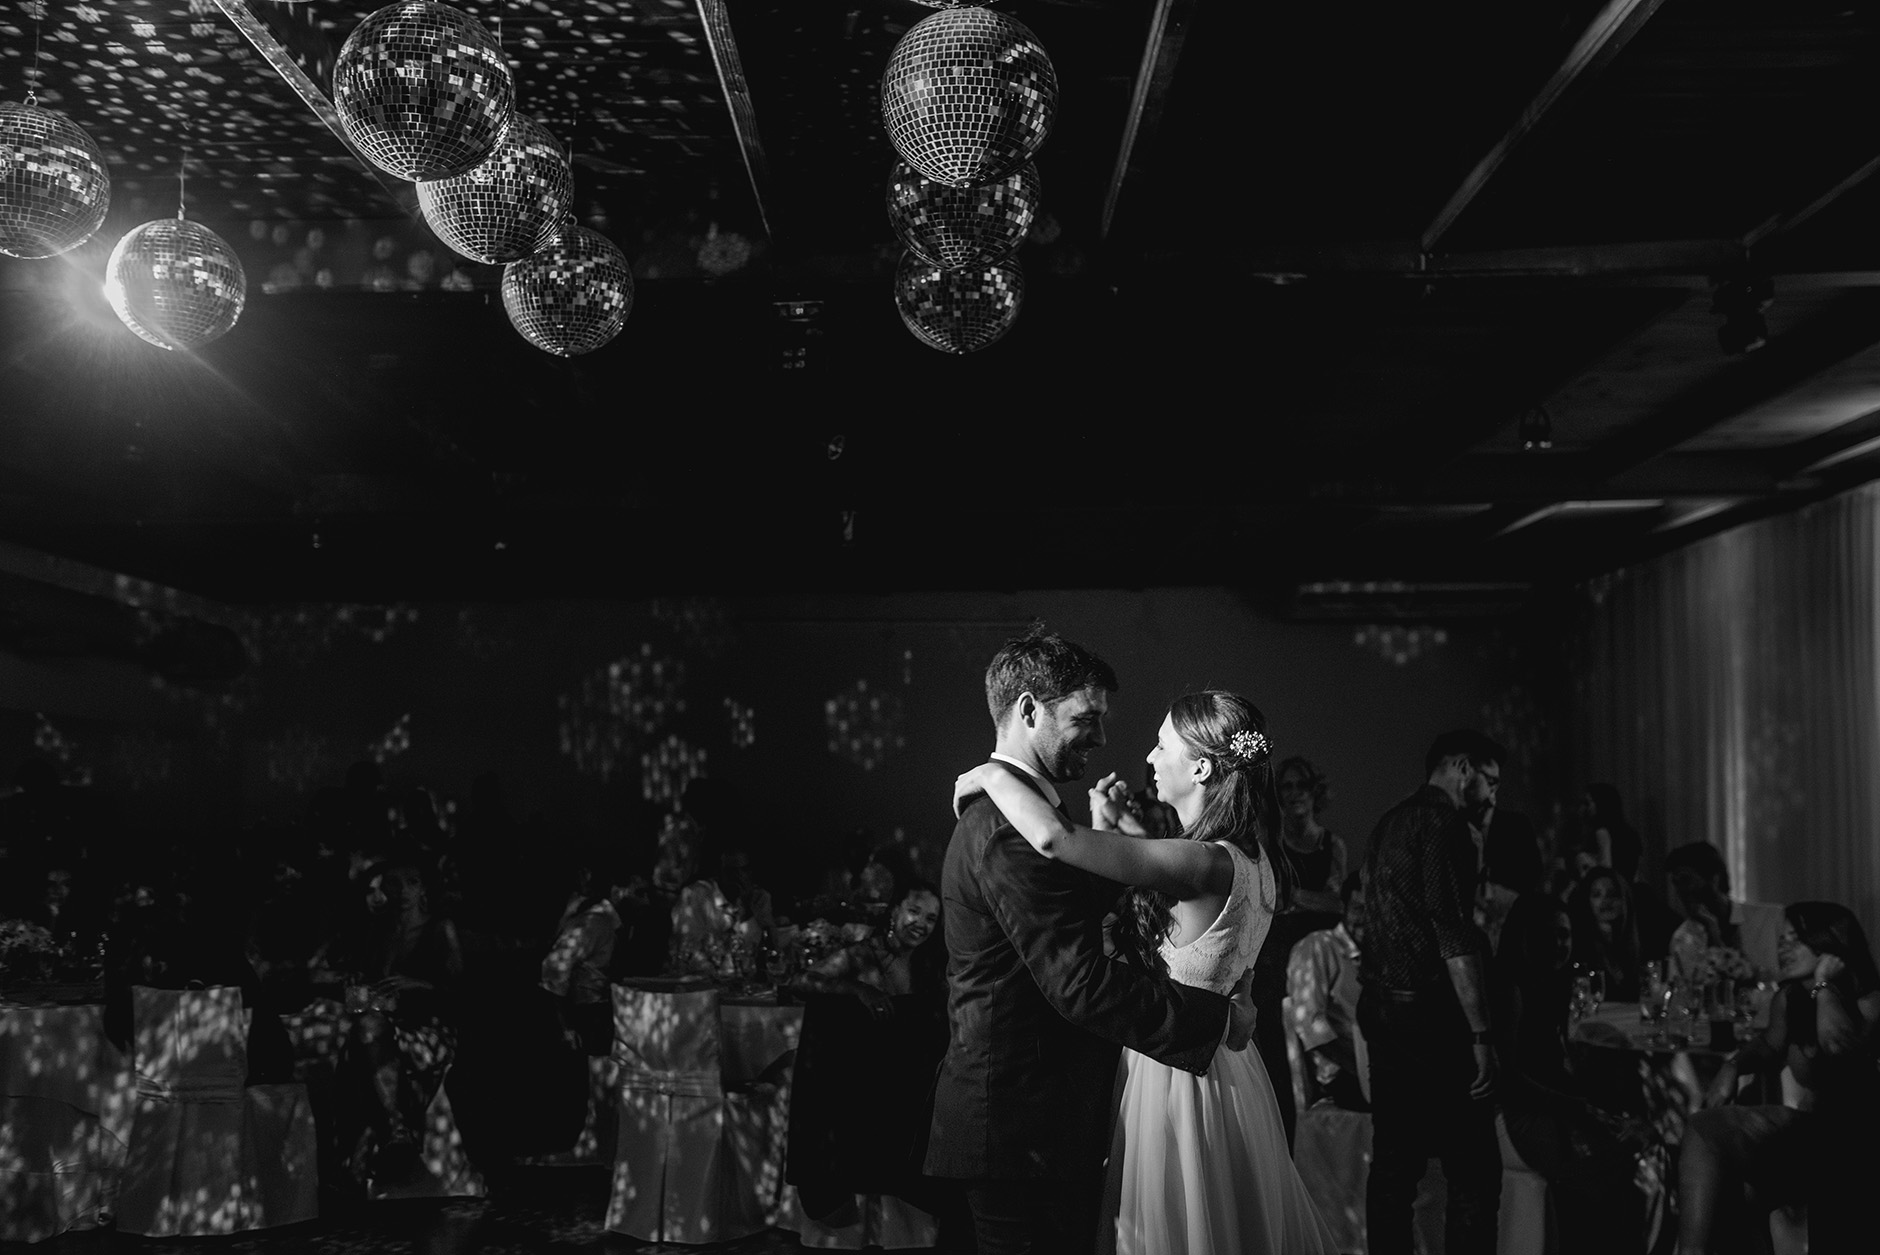 Fotos de la boda de Nay y Nico en Rosario realizadas por Bucle Fotografias Flor Bosio y Caro Clerici